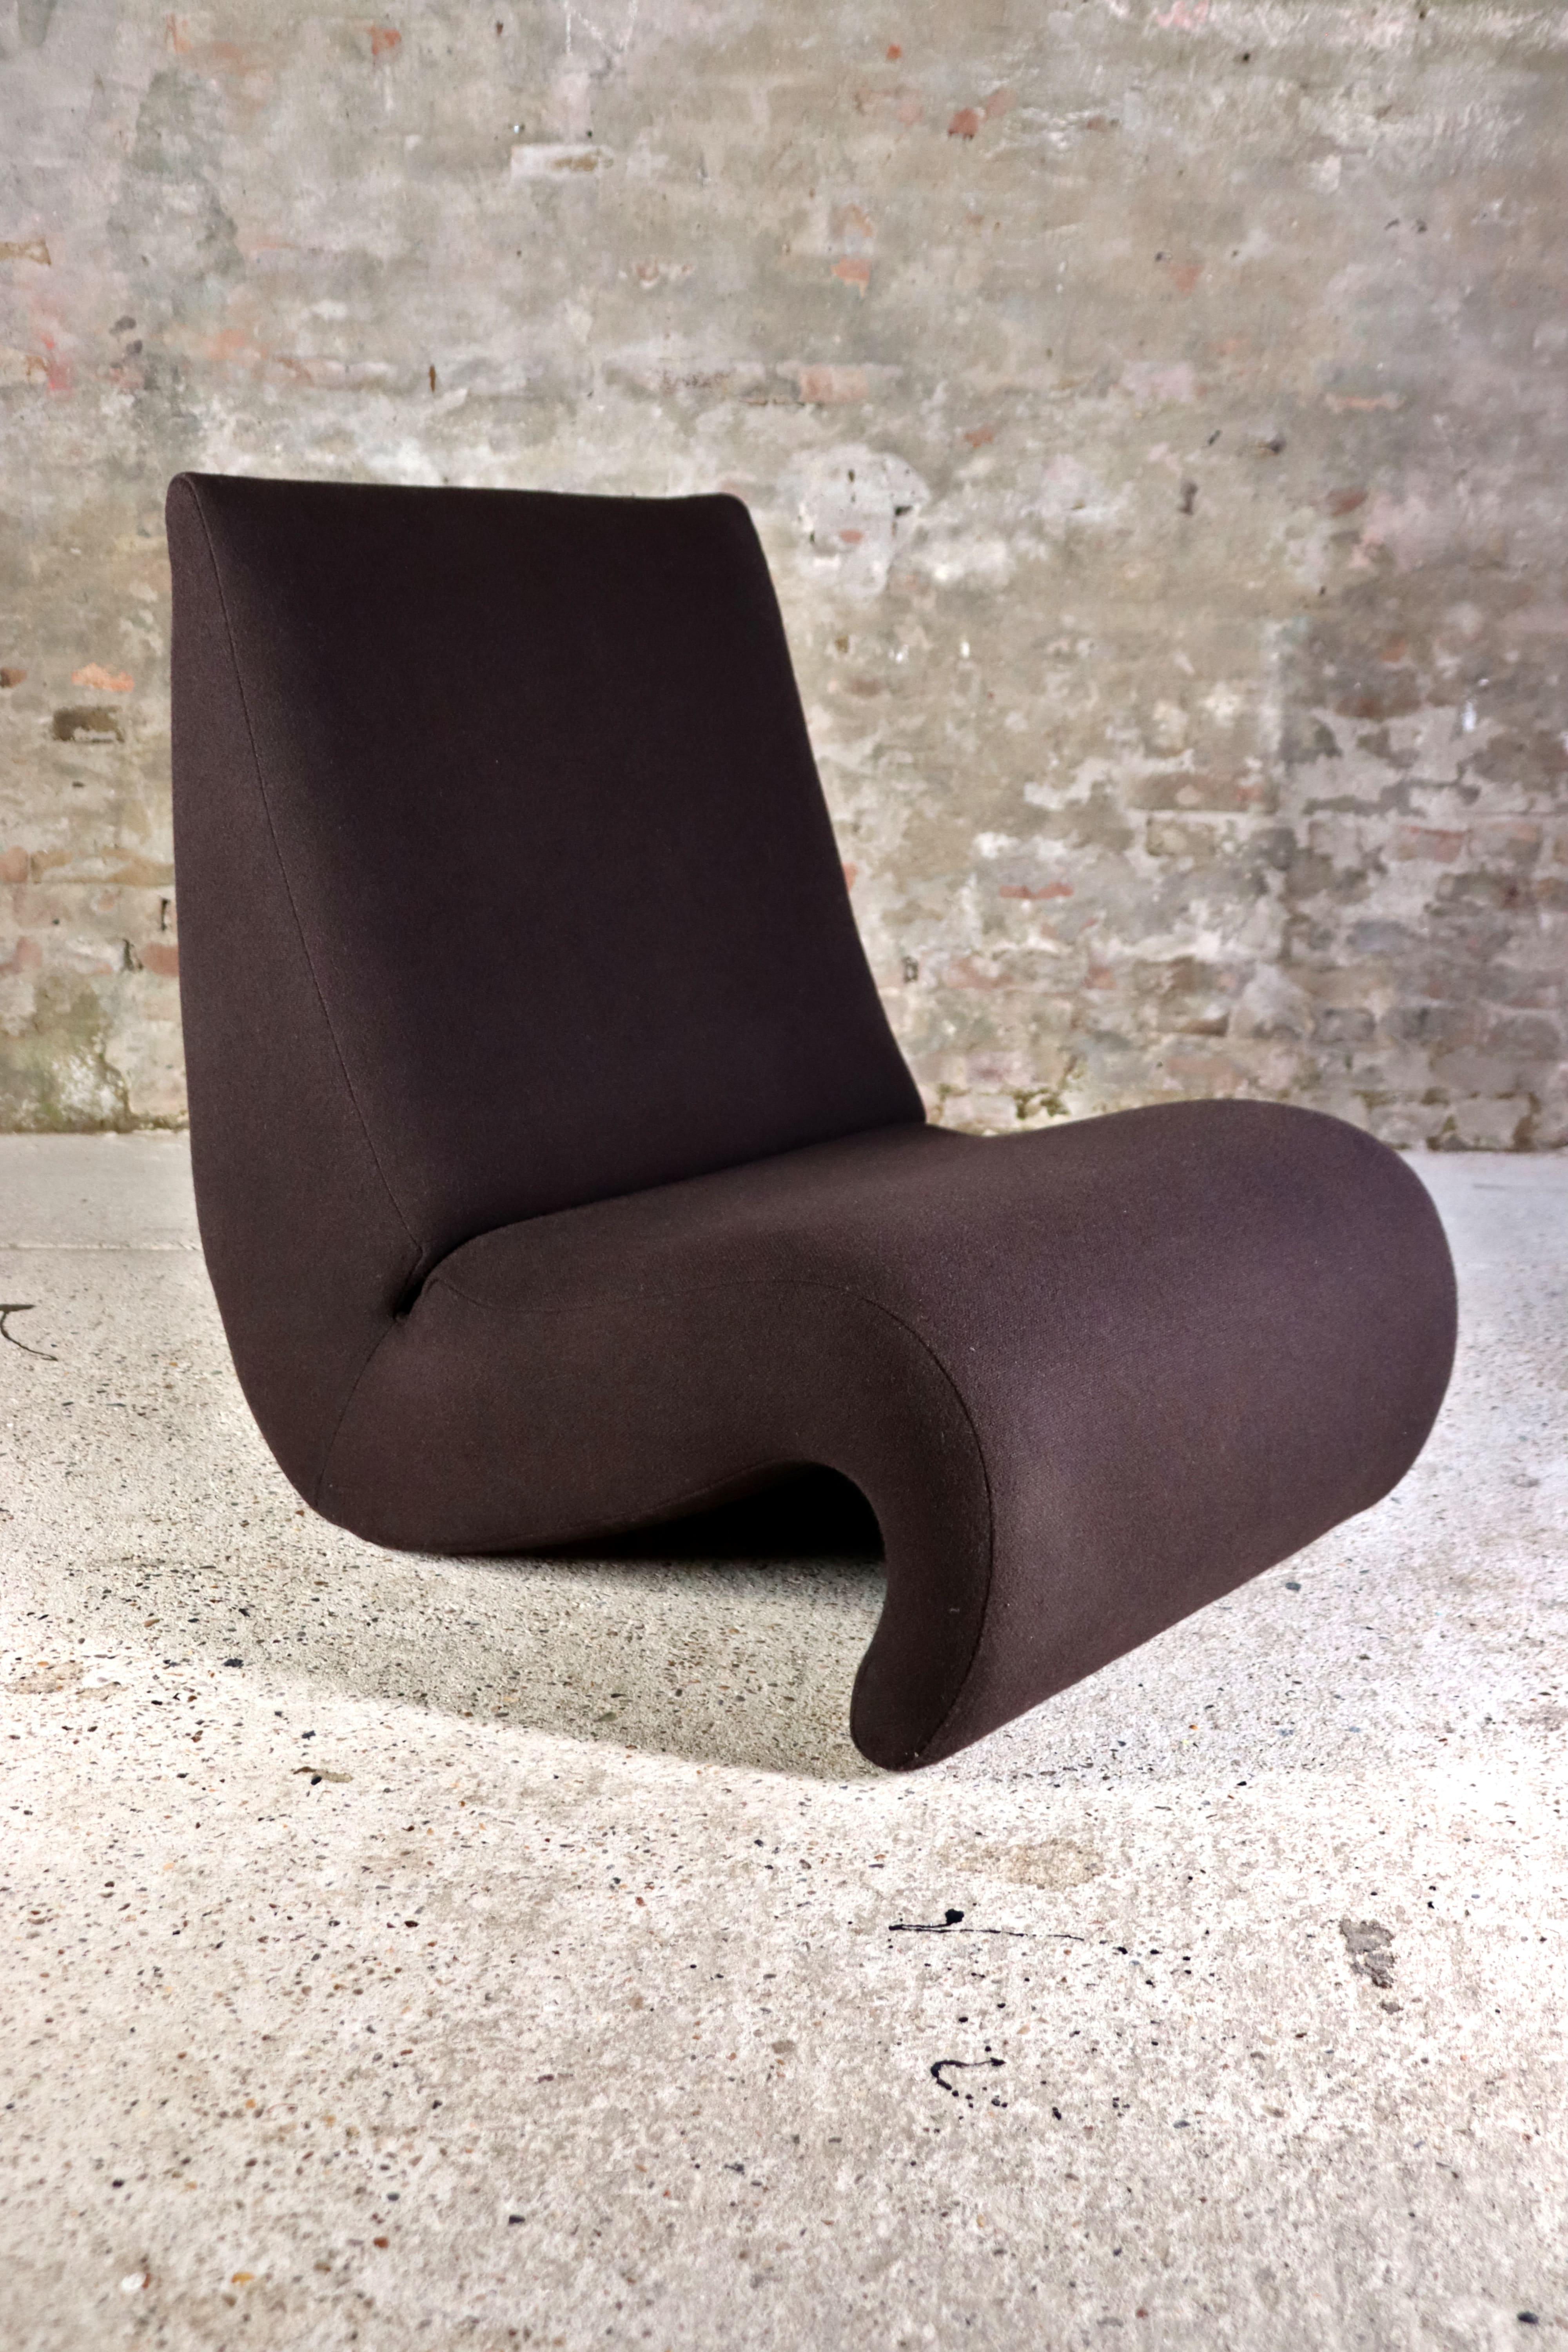 Dieser Stuhl heißt Amoebe und wurde von Verner Panton für Vitra entworfen. Er ist von den Einzellern inspiriert, was sich in Sitz und Rückenlehne widerspiegelt: In einer einzigen, fließenden Form umschließt er den Körper ergonomisch. Dieser